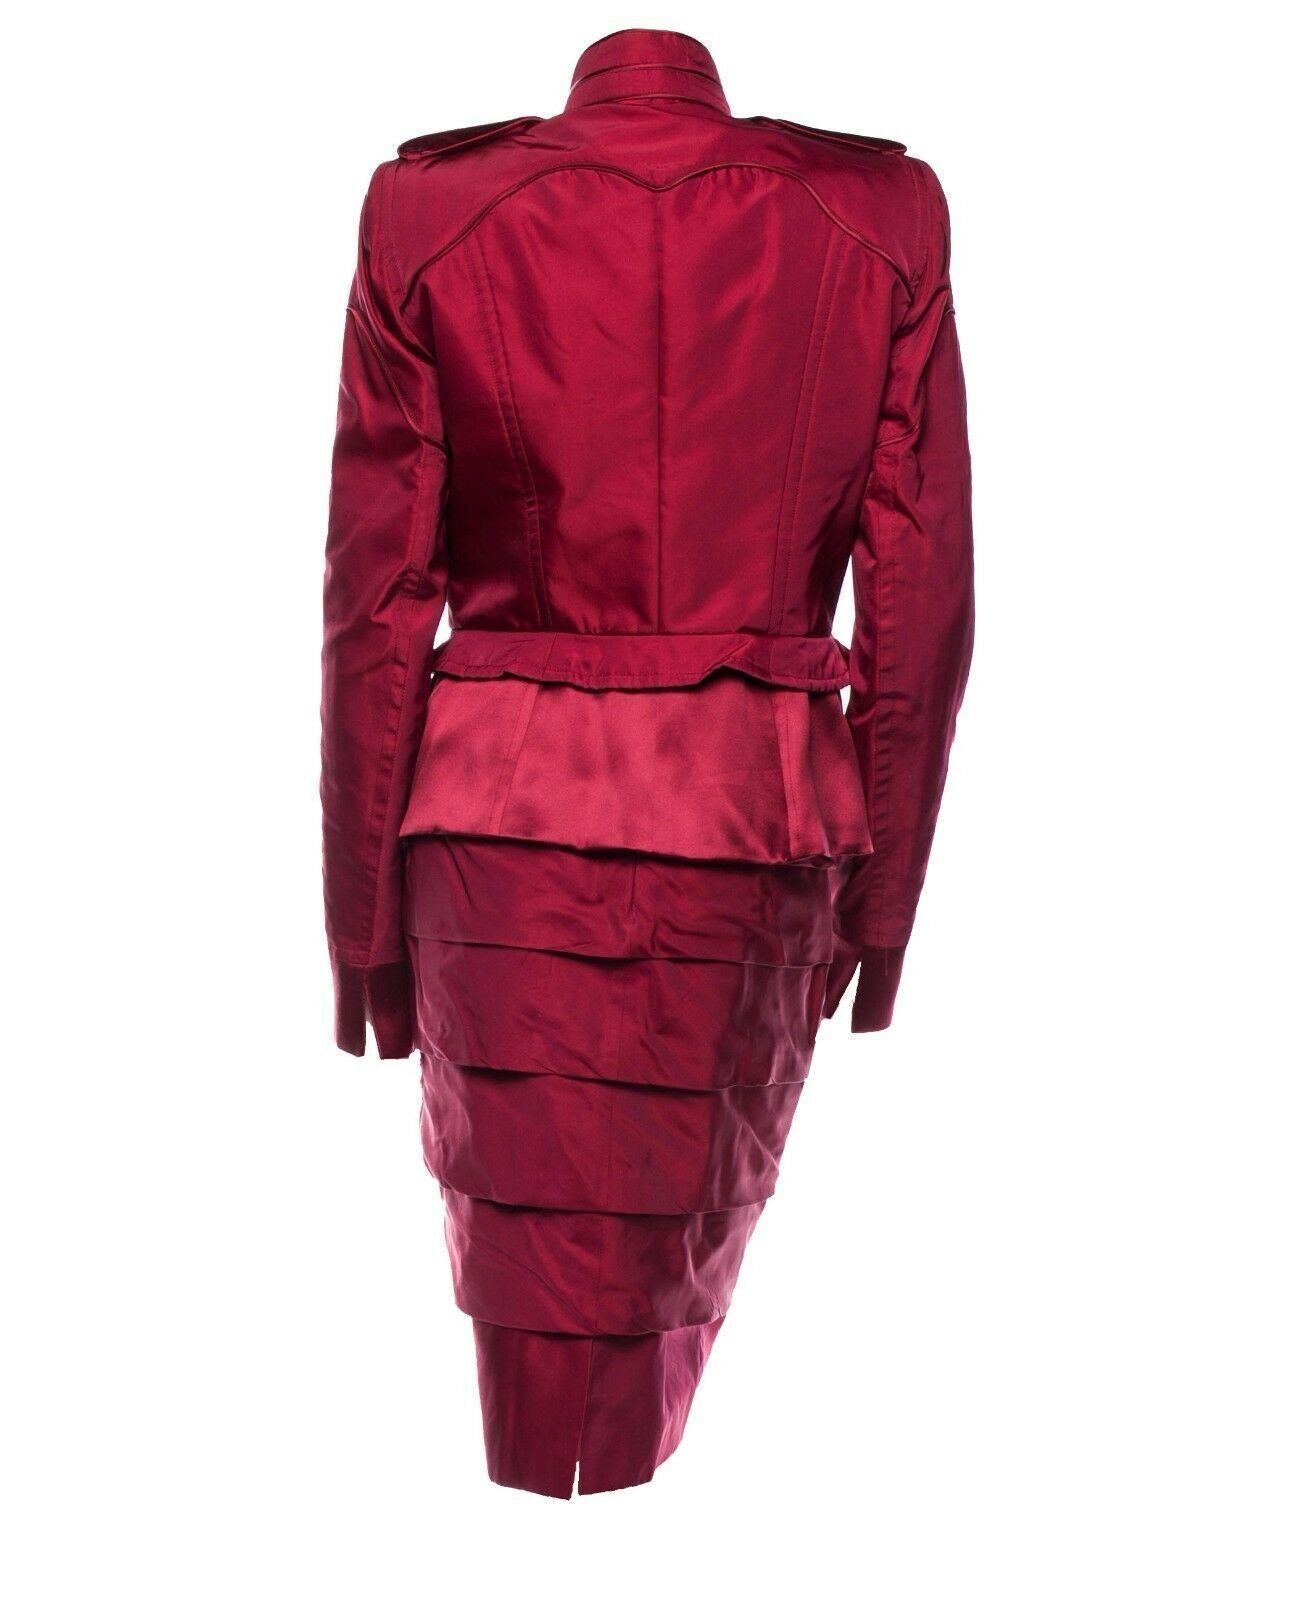 Costume jupe vintage Tom Ford pour Yves Saint Laurent.
F/W 2004 Look#1
Pays/Région de fabrication : France
FR Taille 38 - US 6
Matière - 100% soie, Couleur - Rouge bourgogne.
Veste : buste de 36 pouces, taille de 30 pouces, manche incluant le